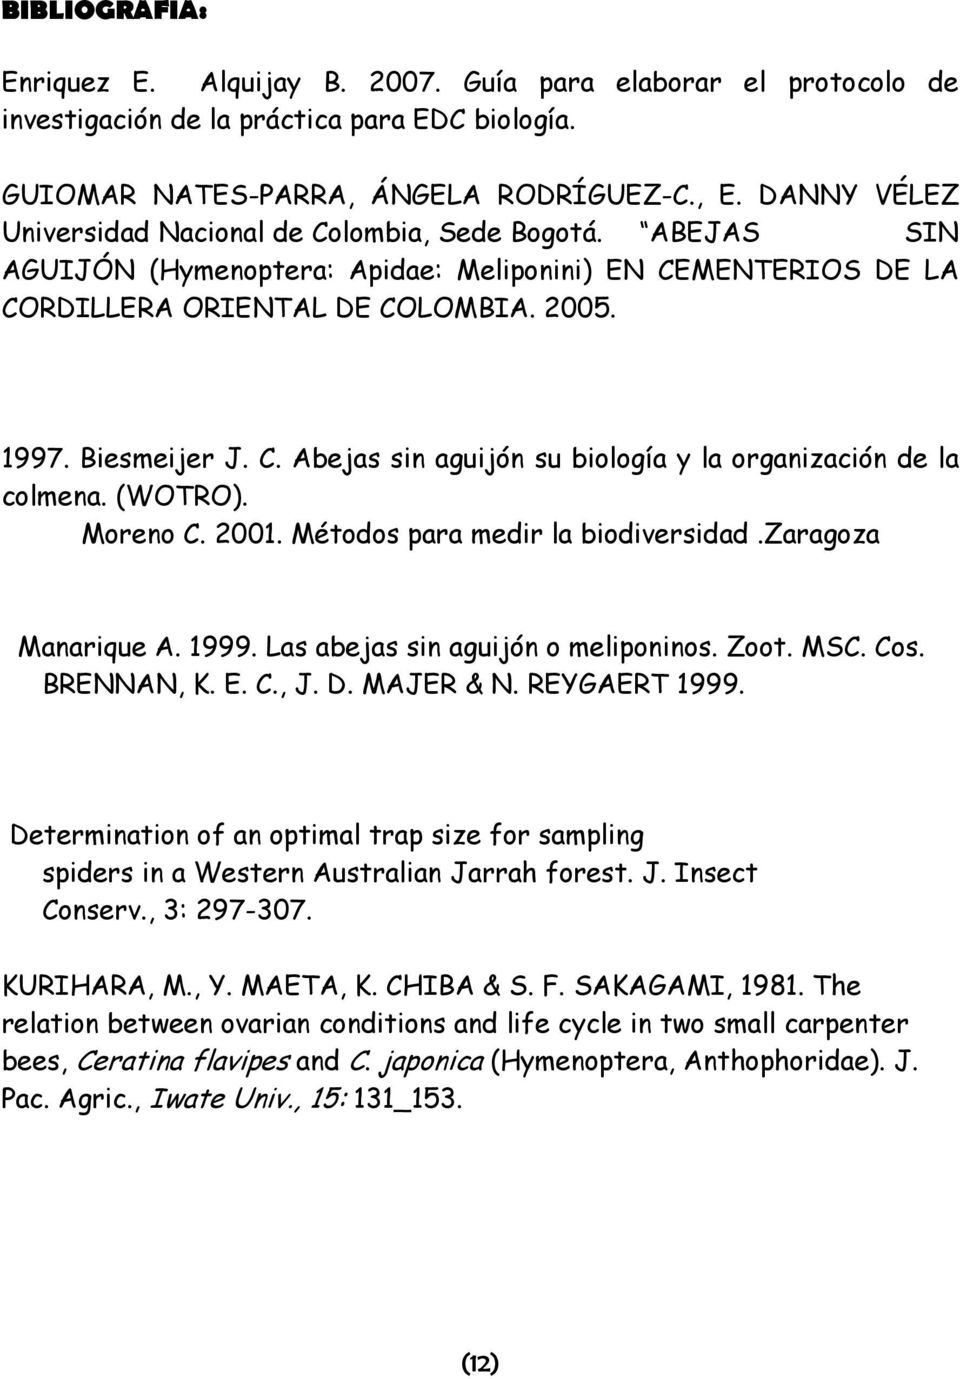 (WOTRO). Moreno C. 2001. Métodos para medir la biodiversidad.zaragoza Manarique A. 1999. Las abejas sin aguijón o meliponinos. Zoot. MSC. Cos. BRENNAN, K. E. C., J. D. MAJER & N. REYGAERT 1999.